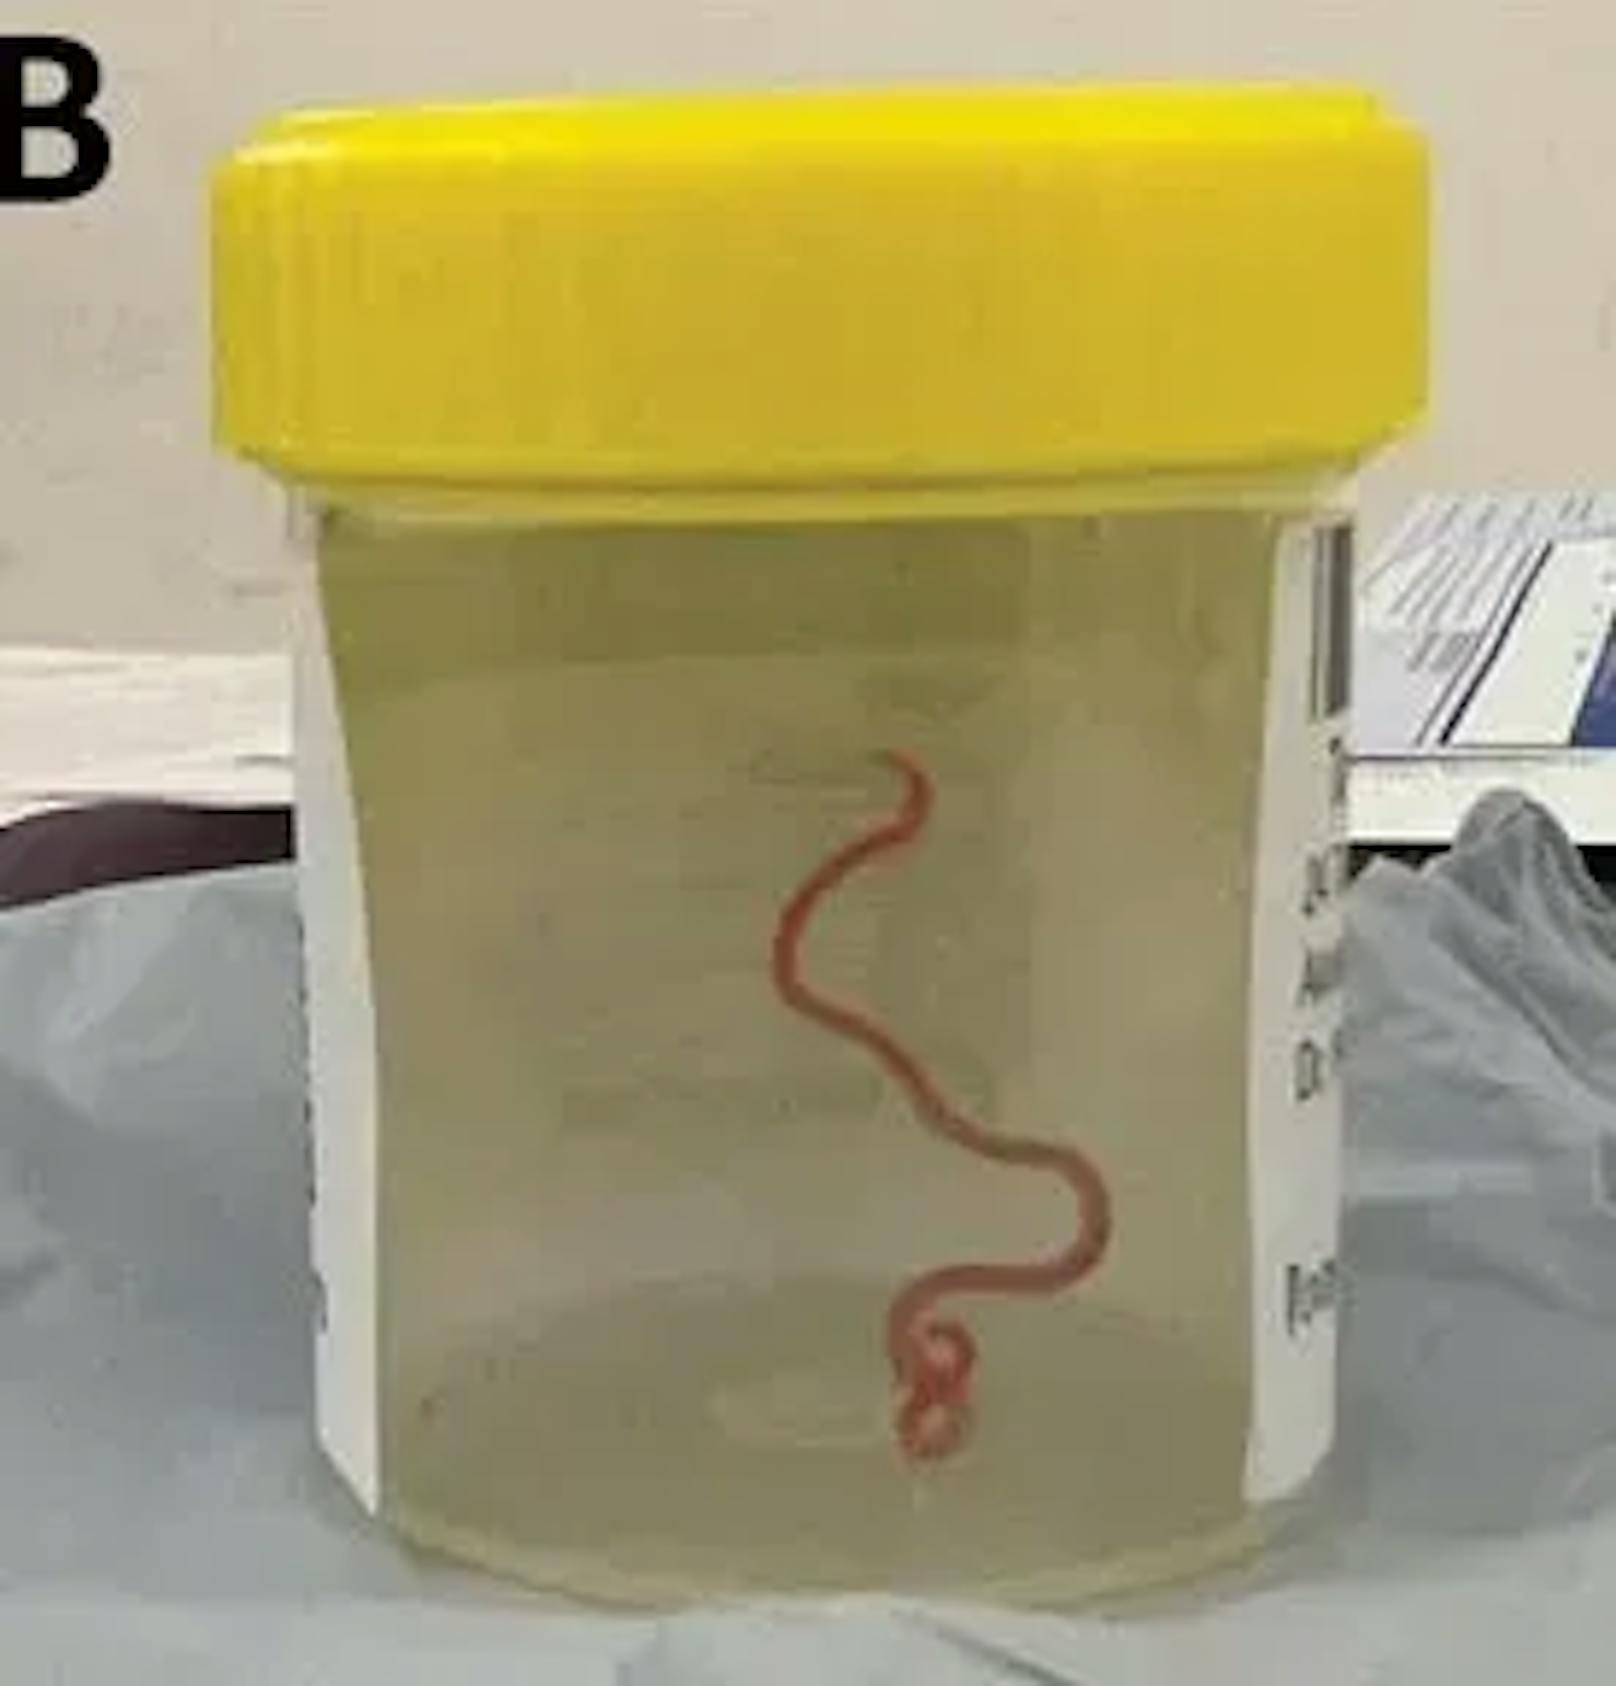 Die Mediziner schickten den lebenden Wurm in ein Forschungsinstitut. Dort erklärten die Wissenschaftler und Wissenschaftlerinnen, dass der Parasit normalerweise in Pythons vorkommt.